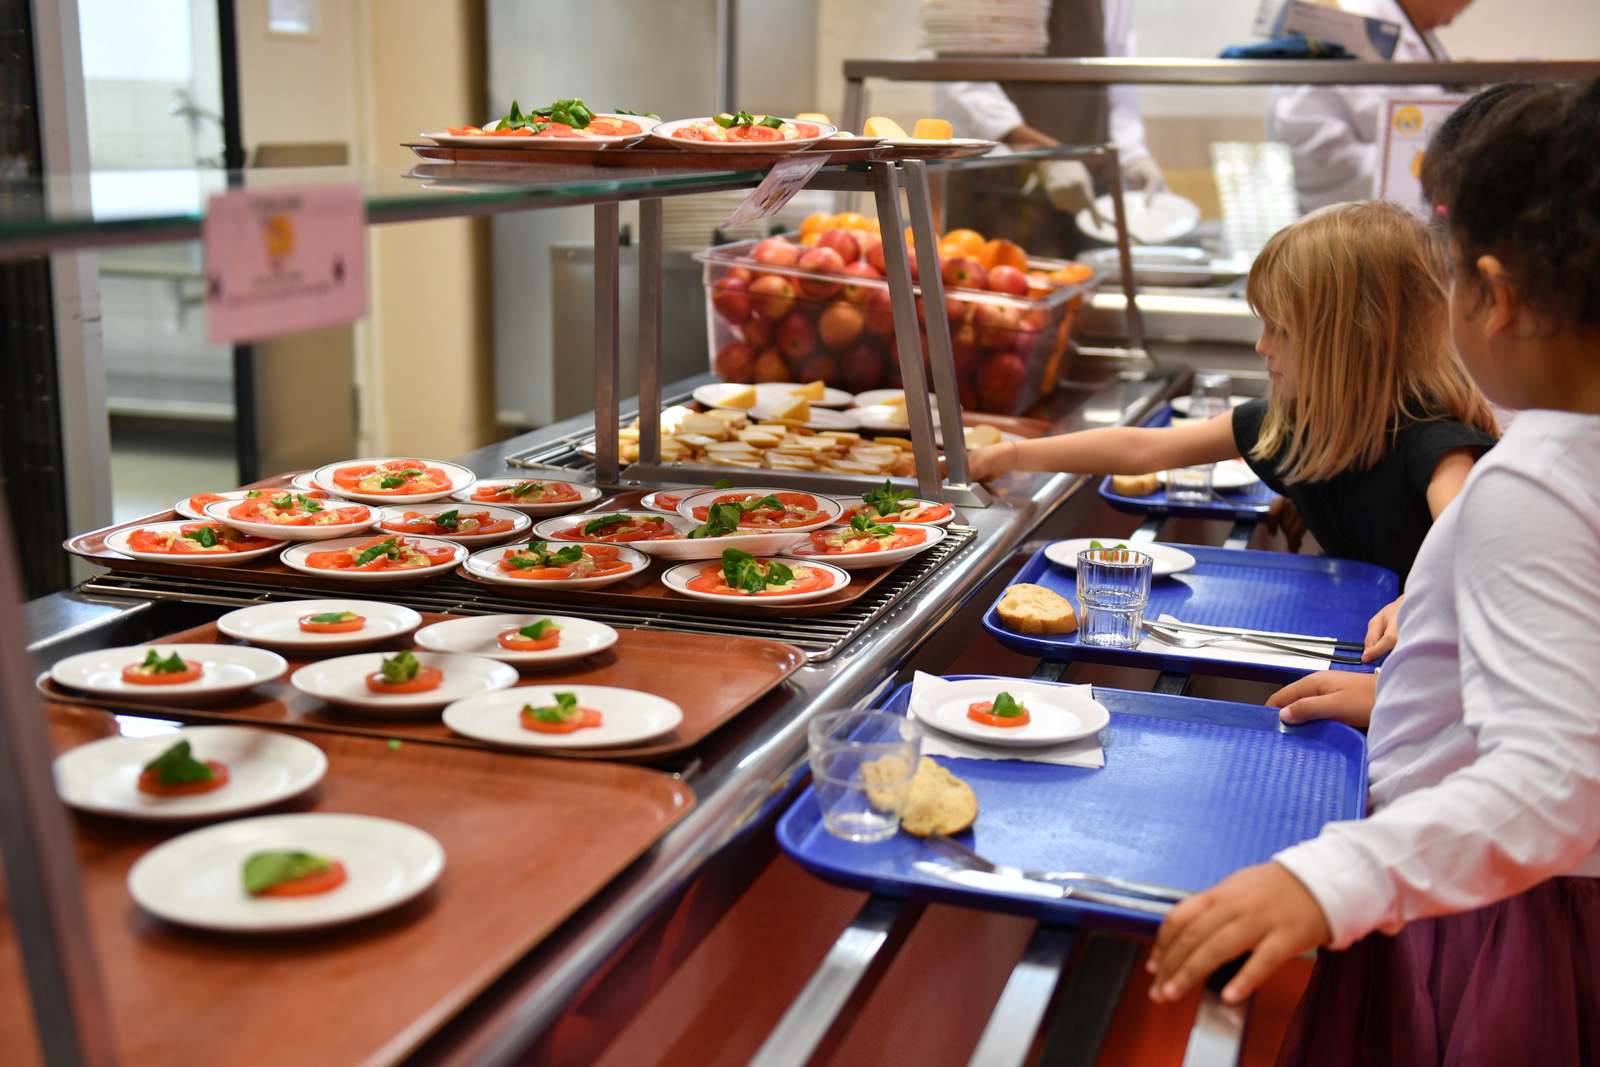 Réfectoire scolaire avec des enfants qui choisissent leurs portions